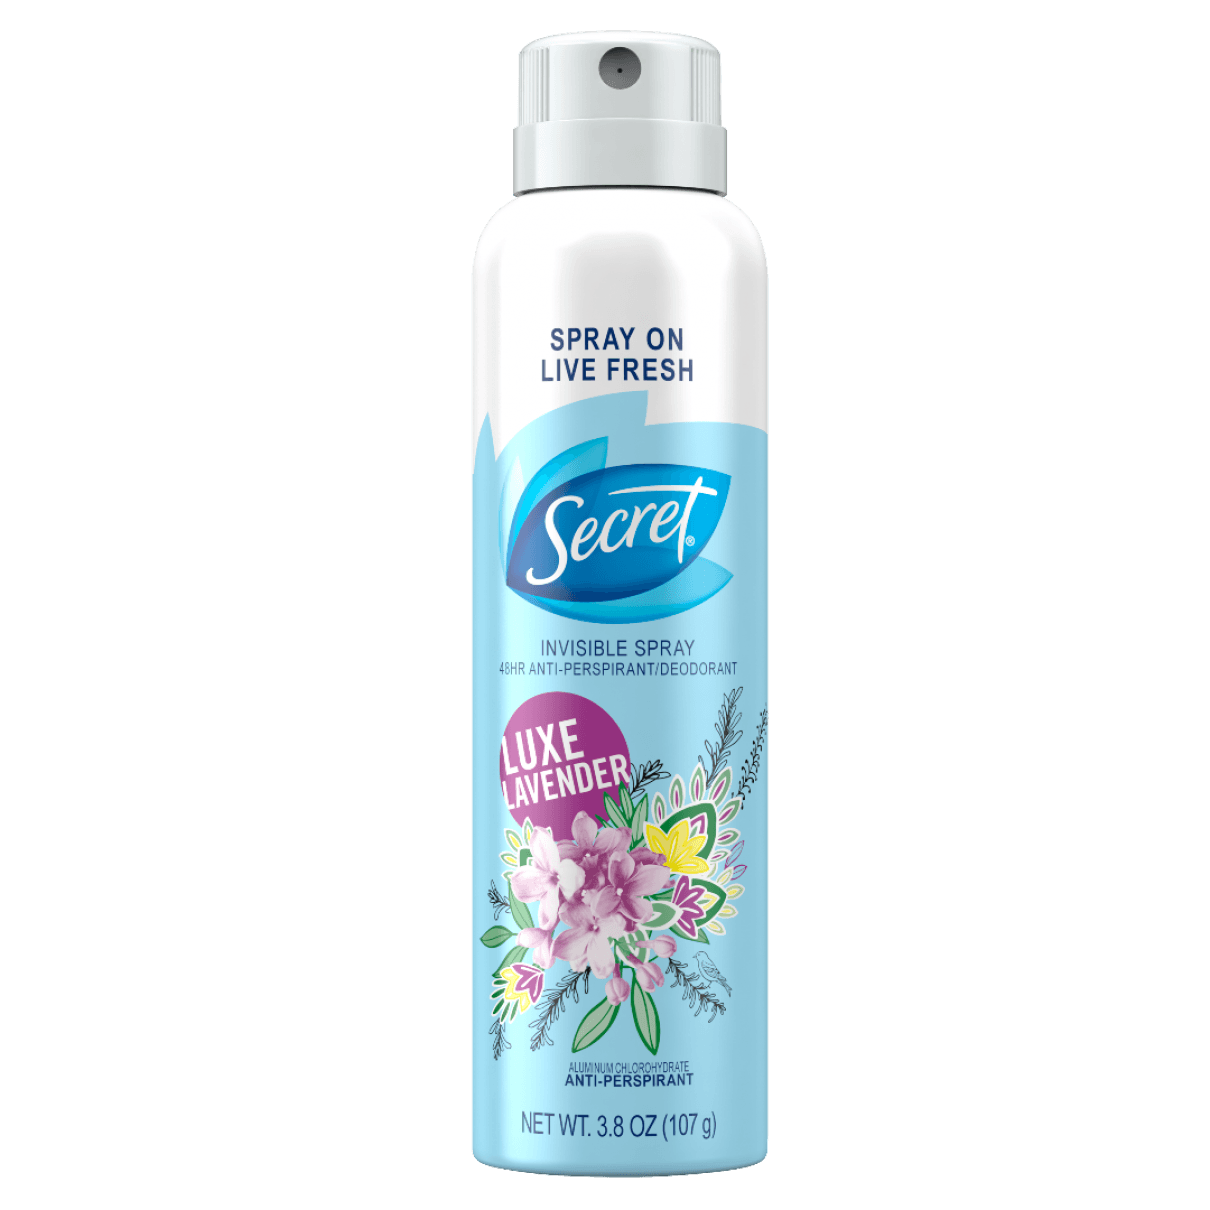 Secret Invisible Spray 48 Hour Antiperspirant/Deodorant